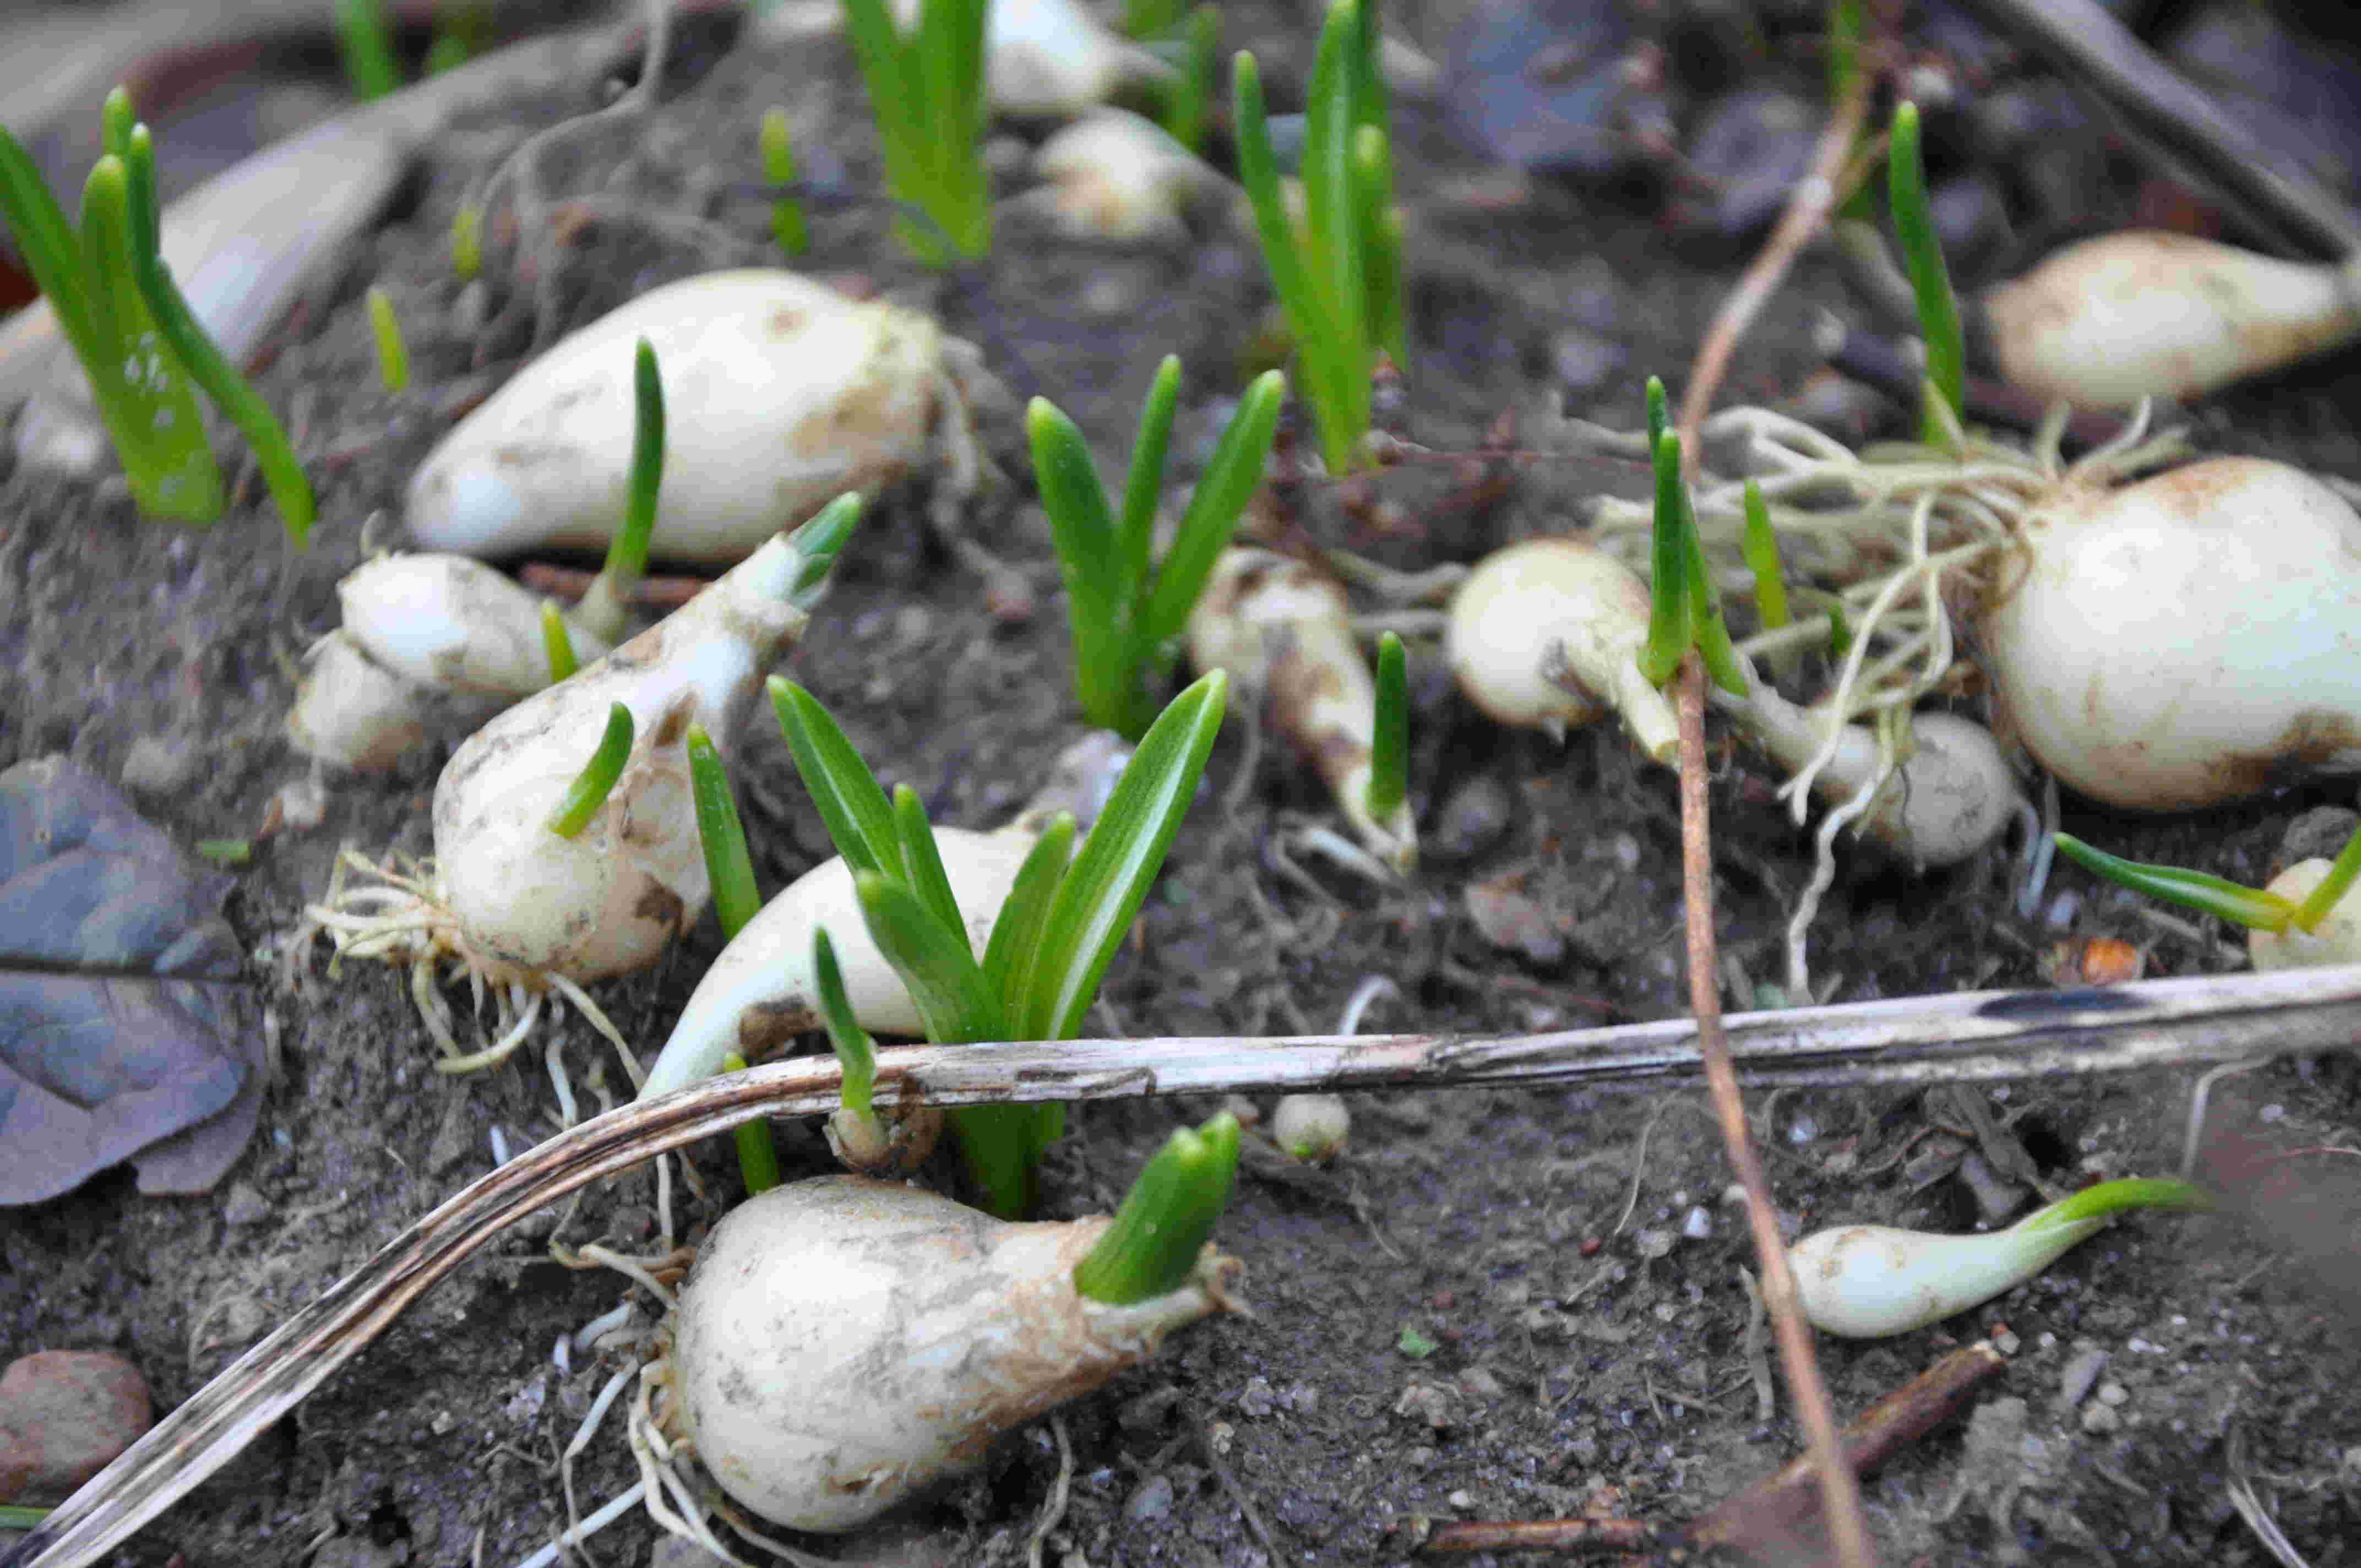 Pärlhyacinten har små vita lökar som inte behöver mycket jord.